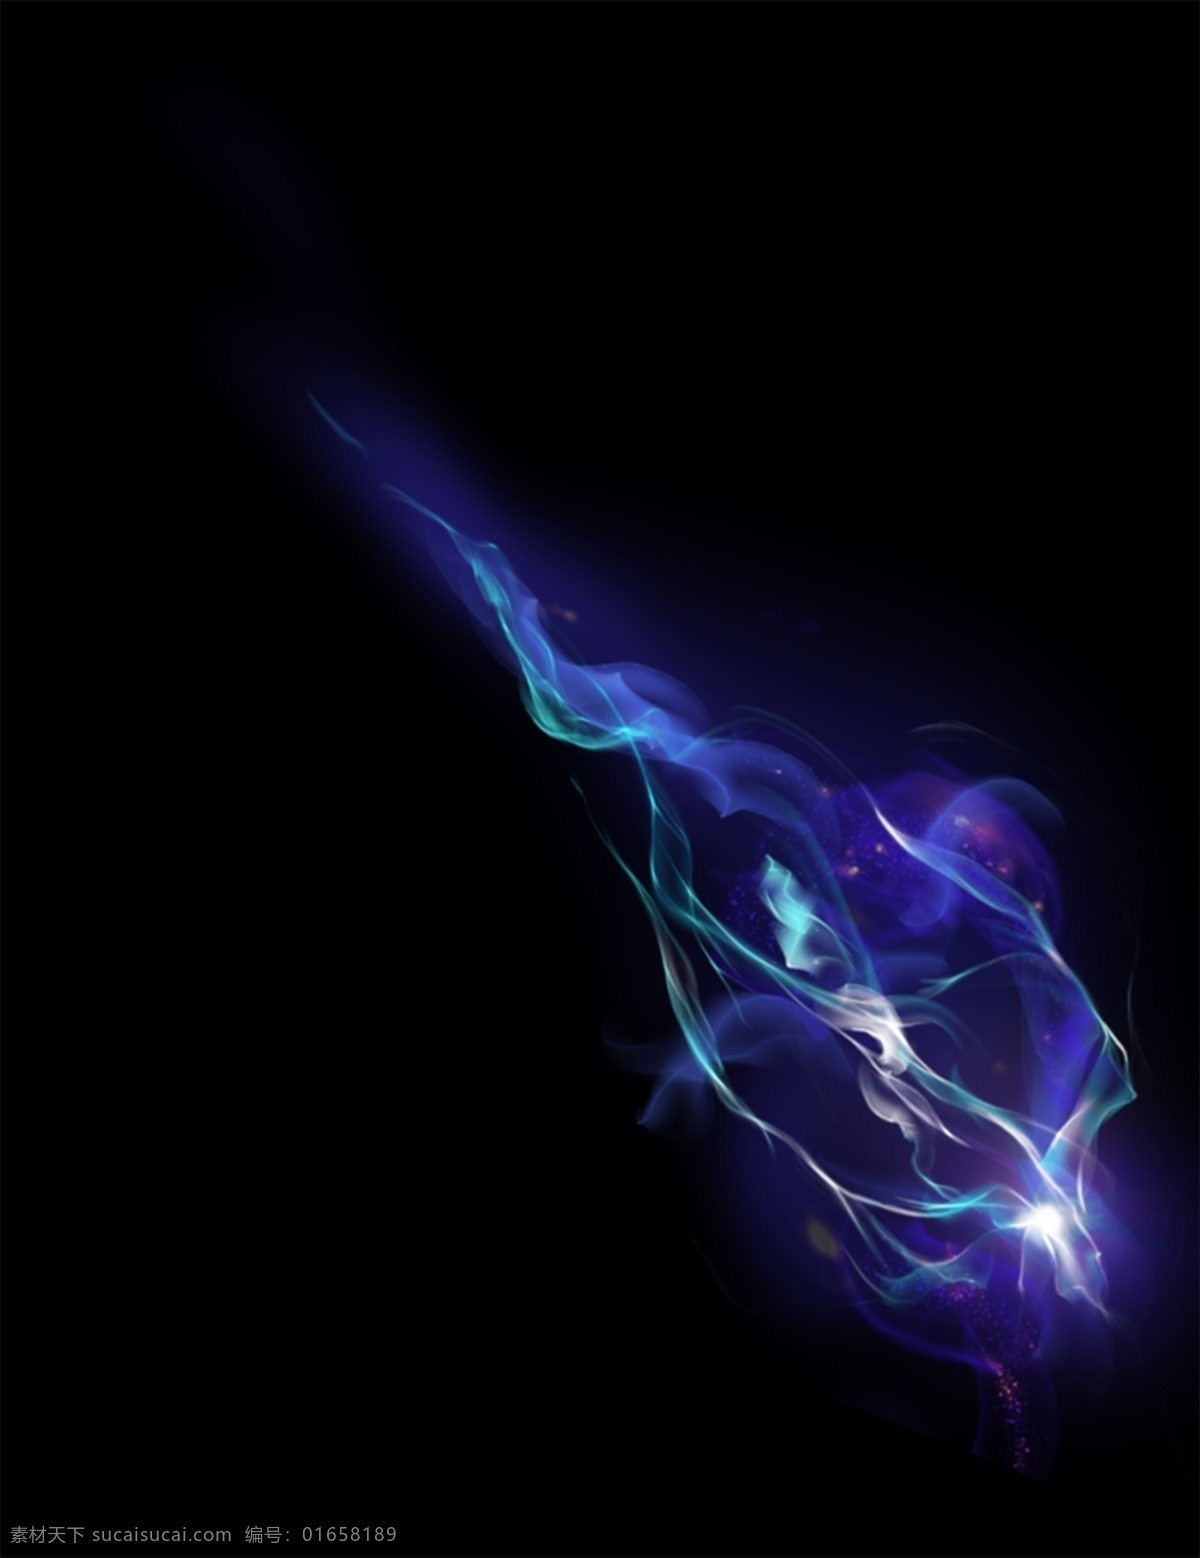 光效素材 游戏光效素材 紫色光 蓝色光 烟雾光效 游戏 梦幻